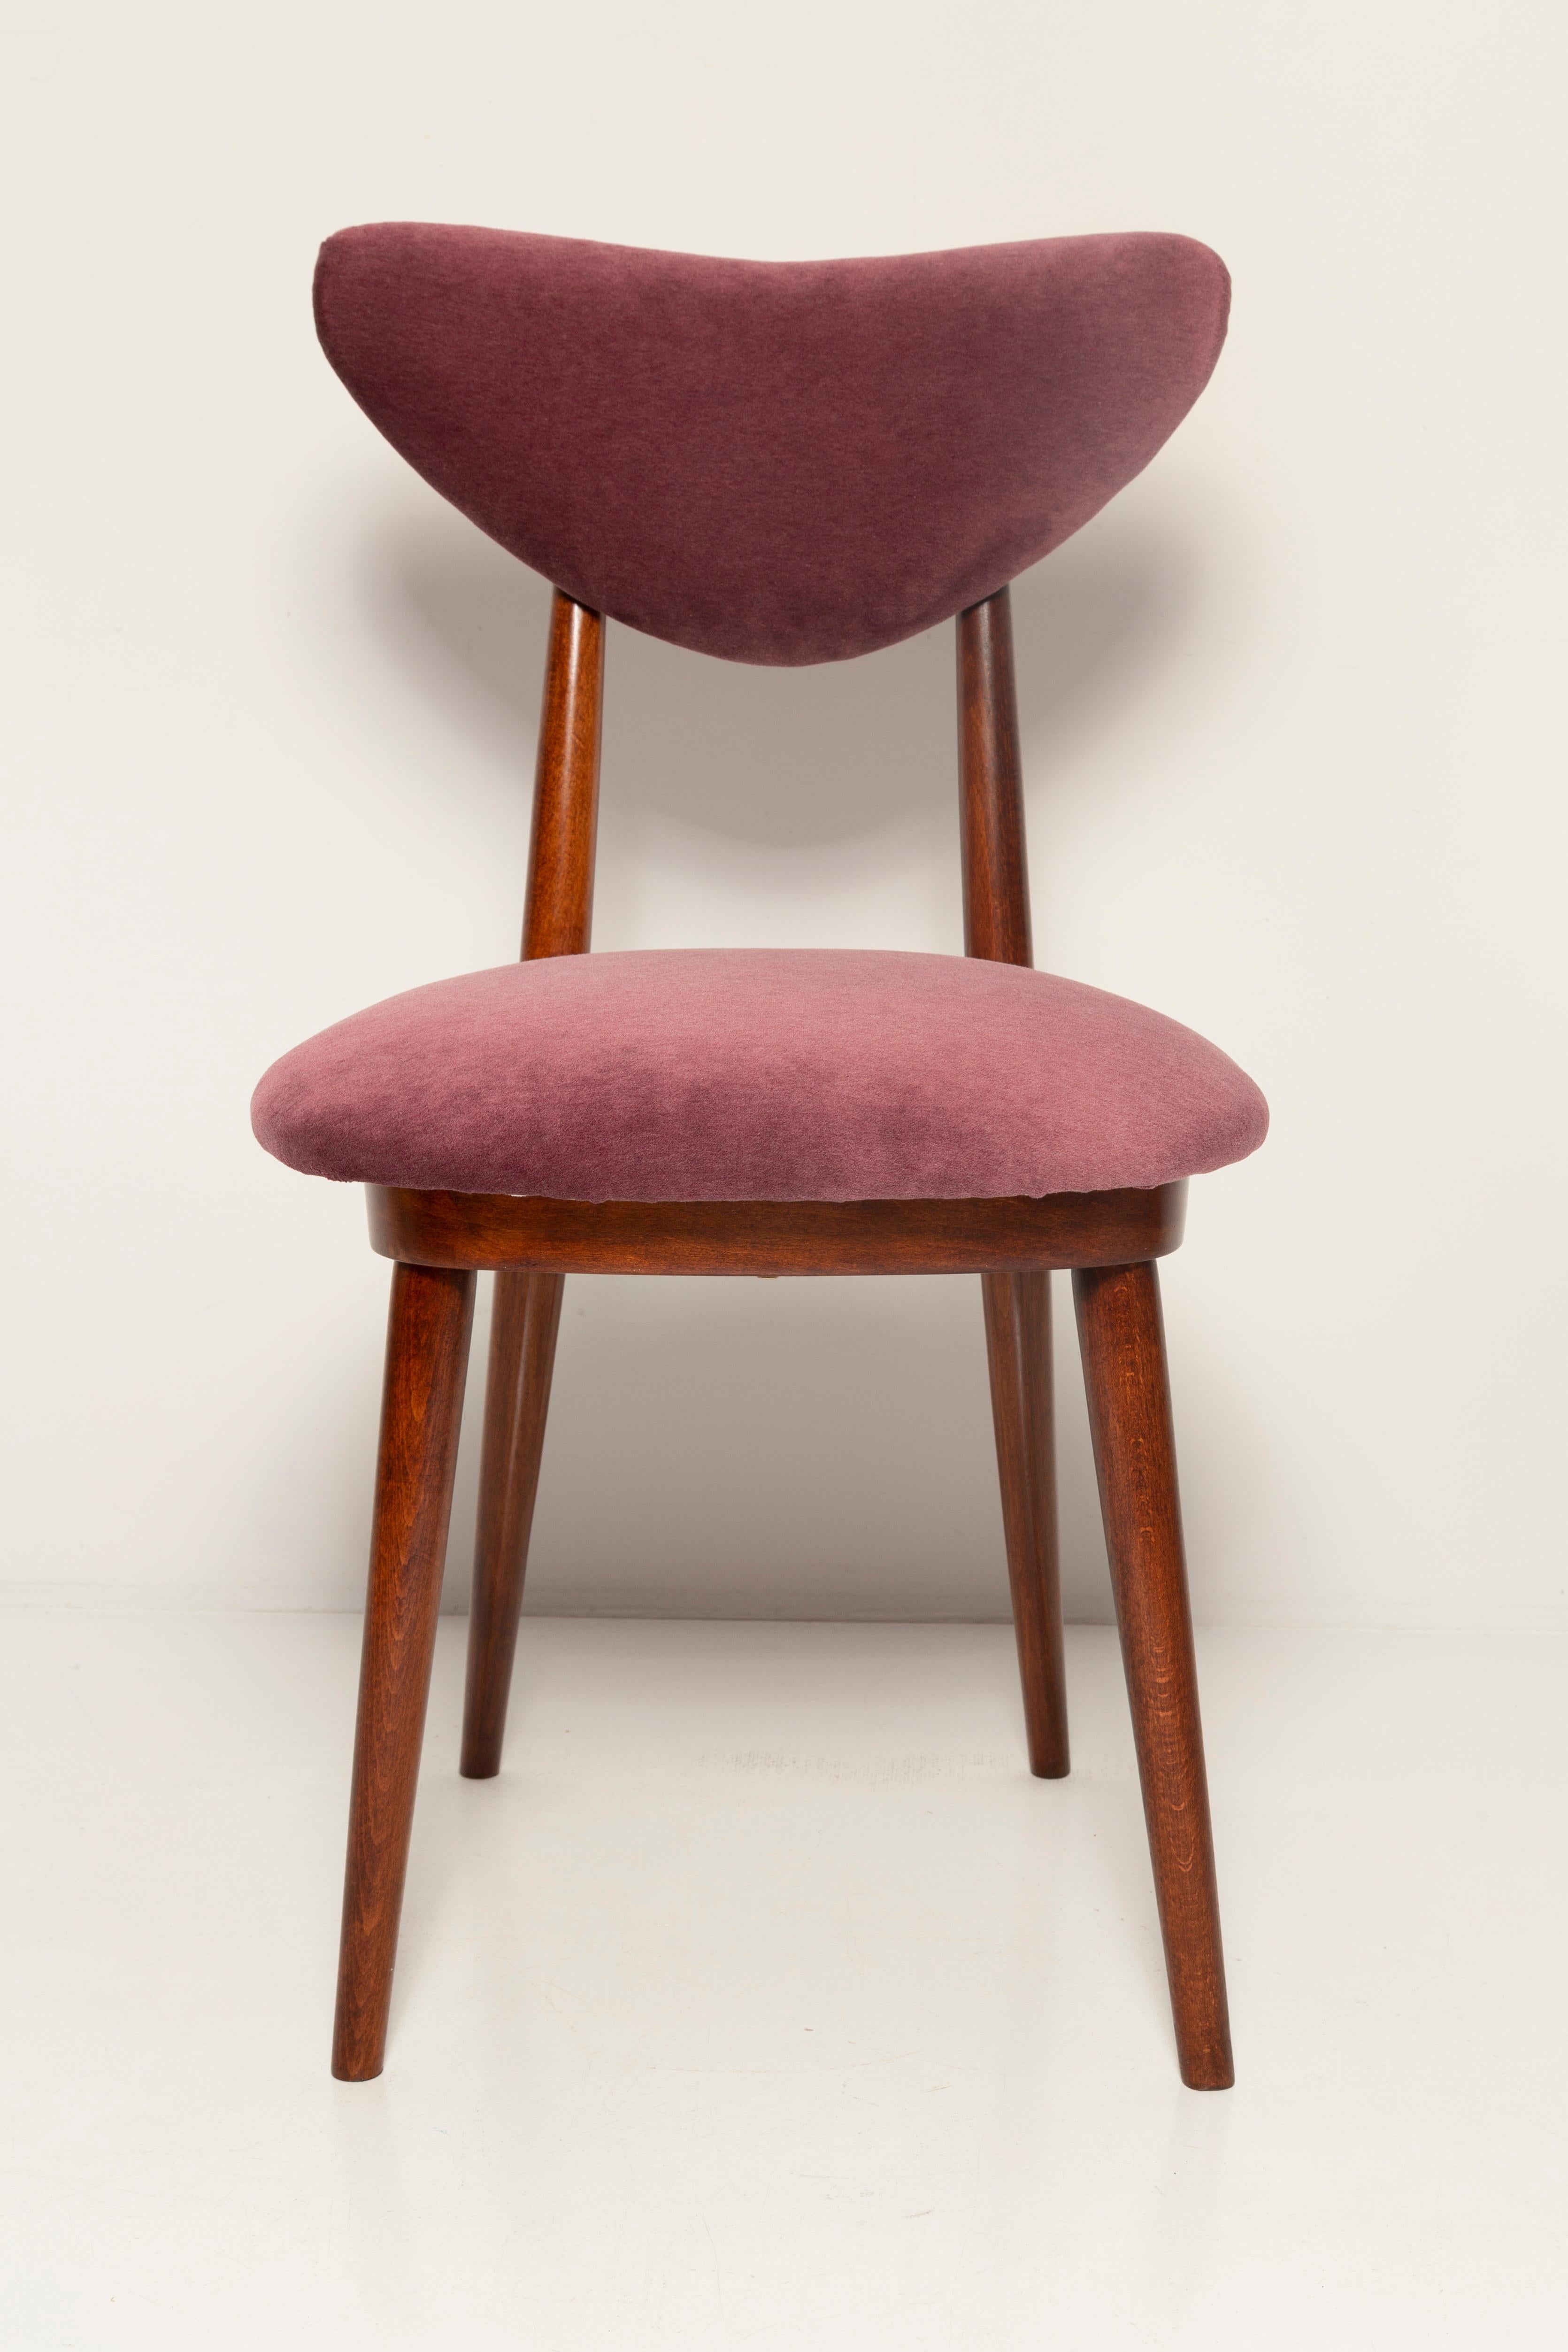 20th Century Midcentury Plum Violet Velvet Heart Chair, Europe, 1960s For Sale